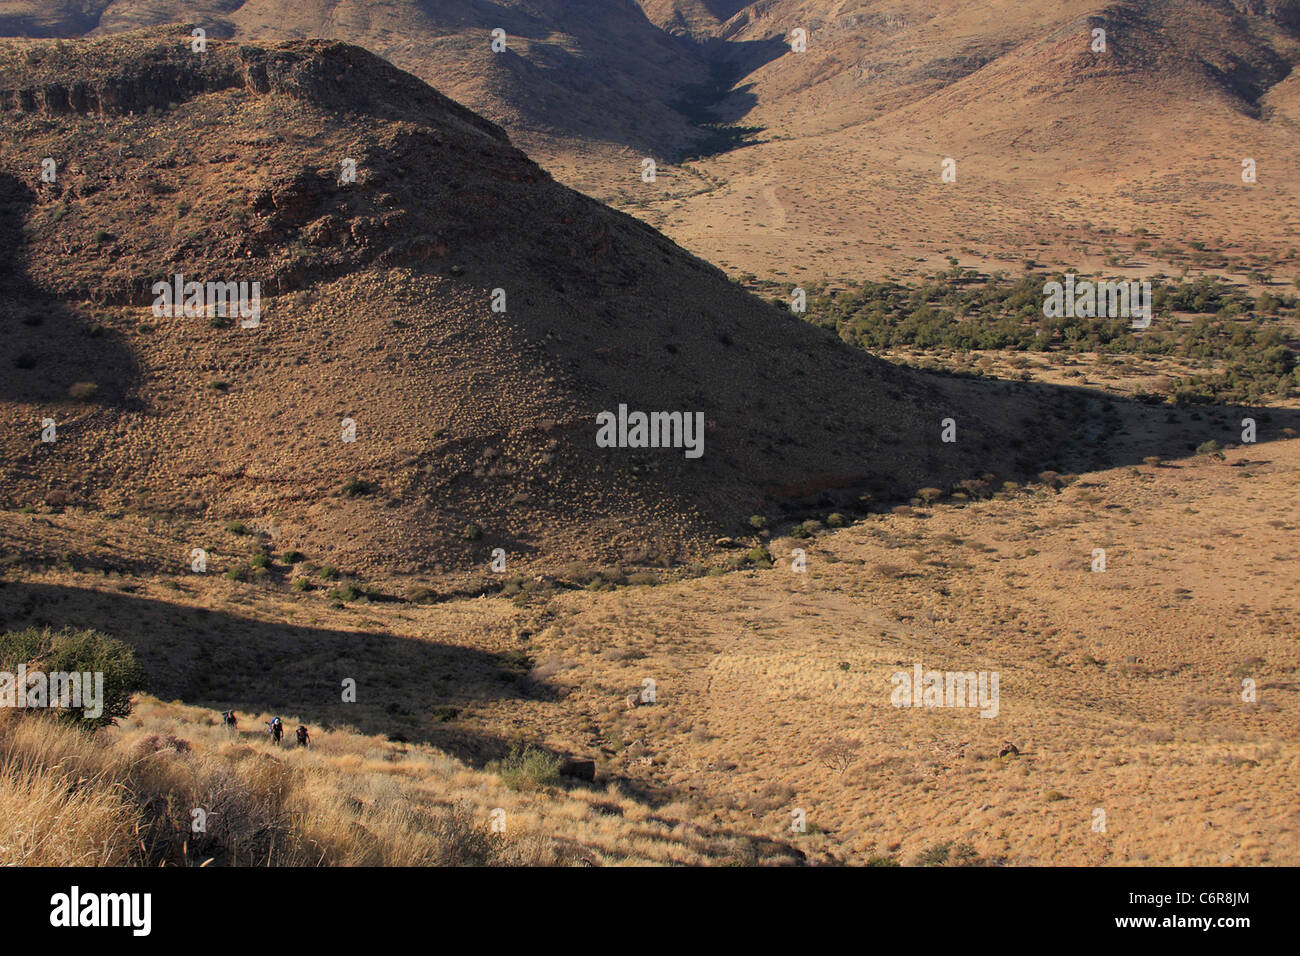 Les randonneurs éclipsé par la colline massive dans paysage de désert Banque D'Images